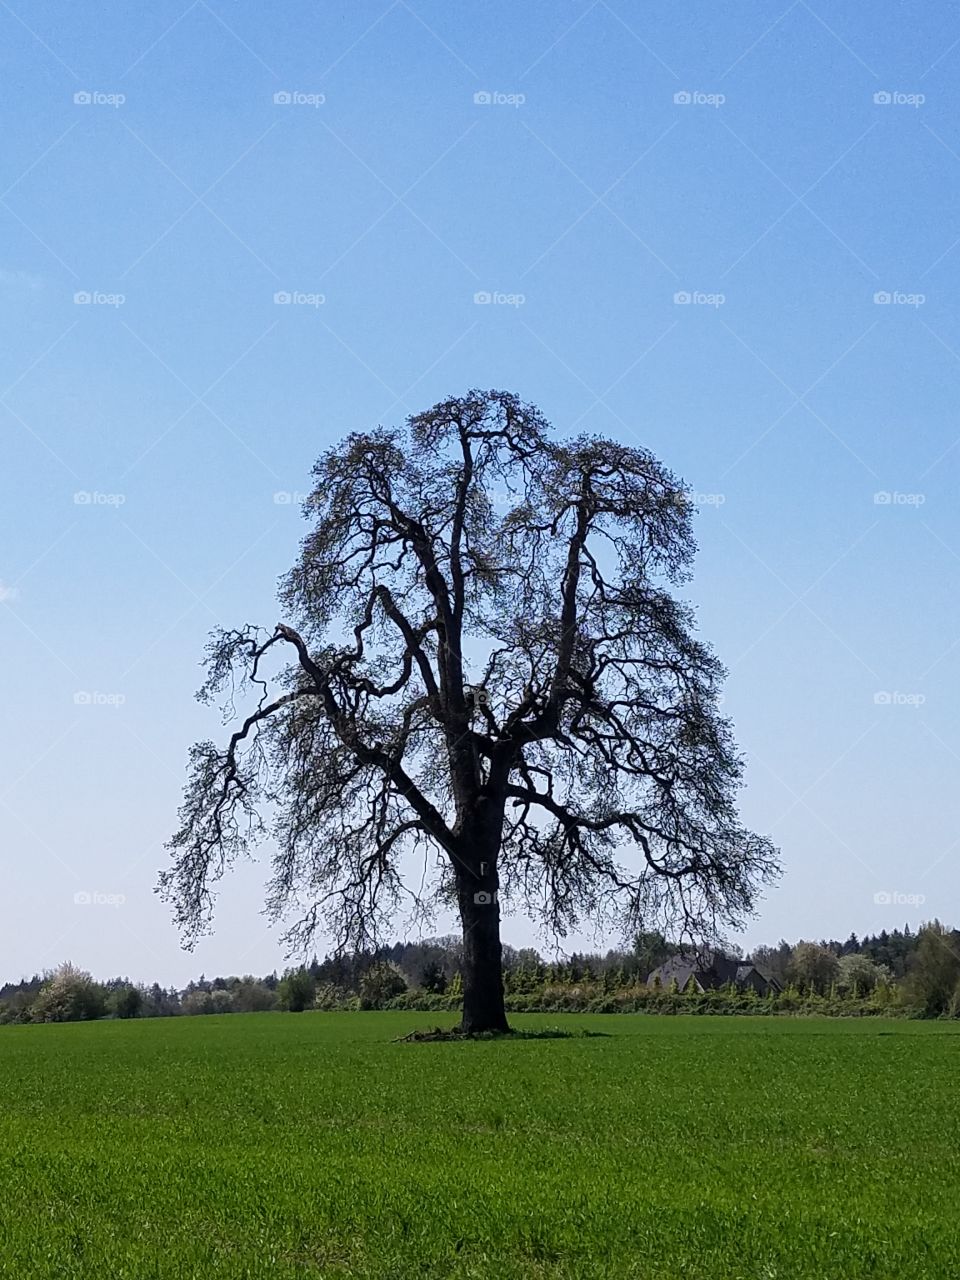 A mighty tree